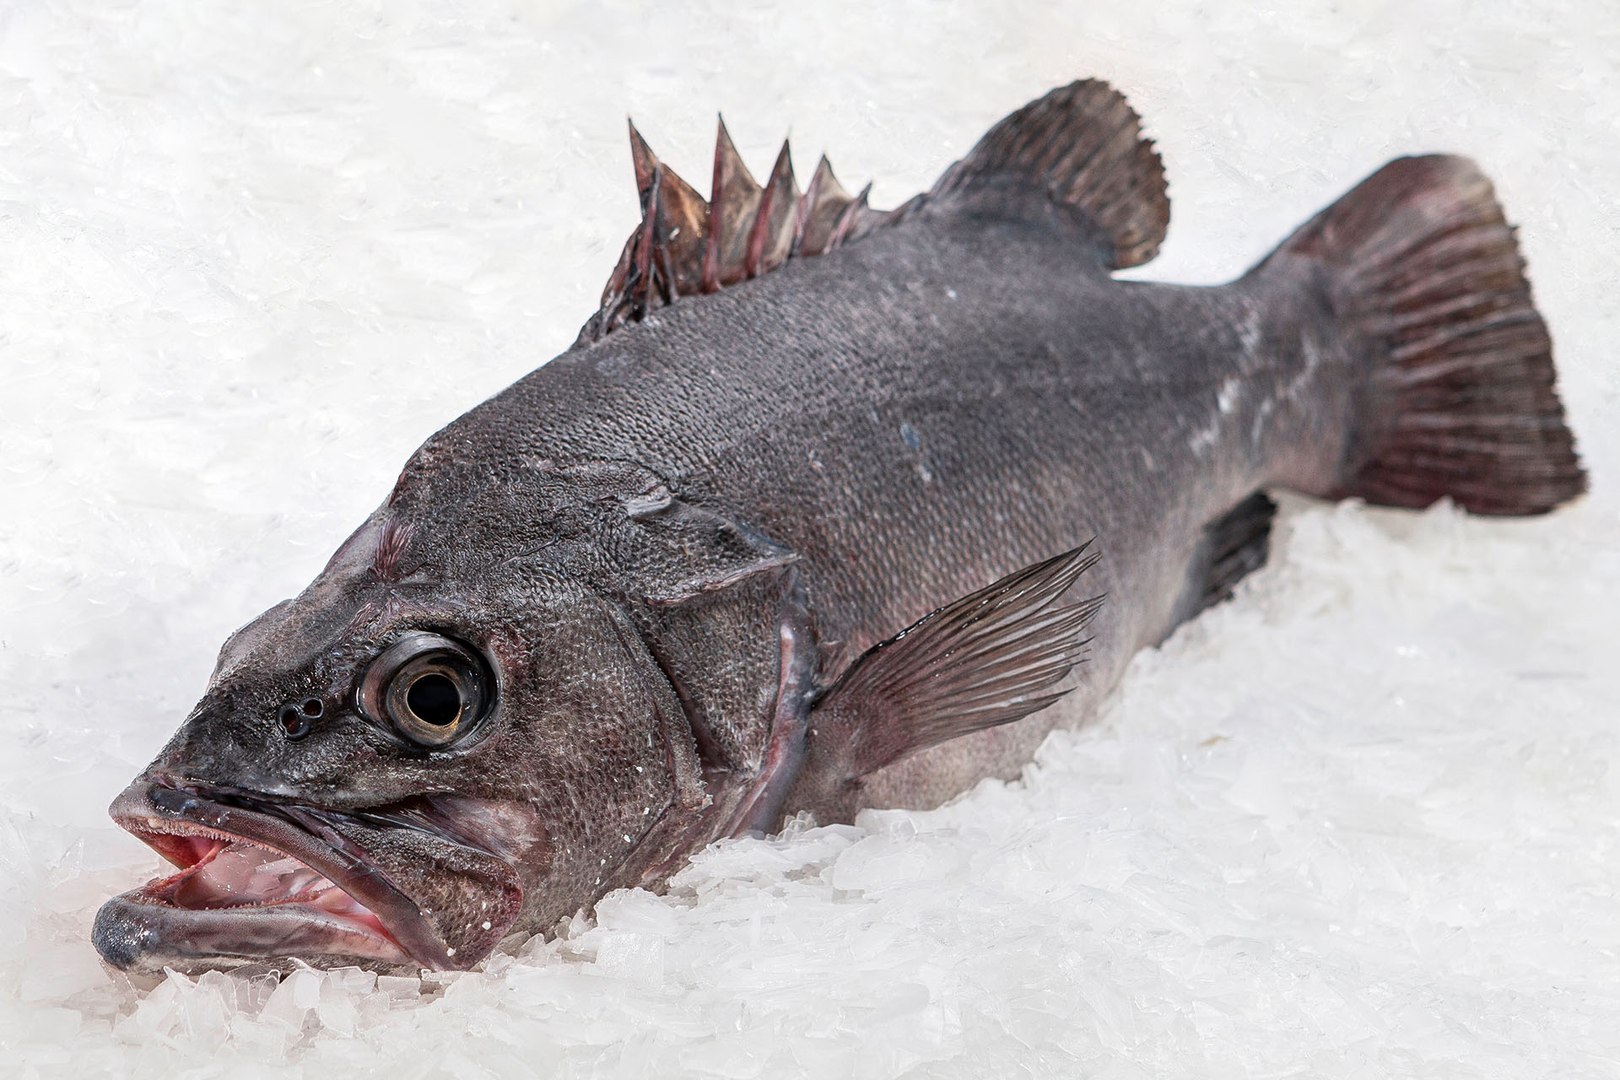 Cinco reglas básicas para reconocer el pescado fresco